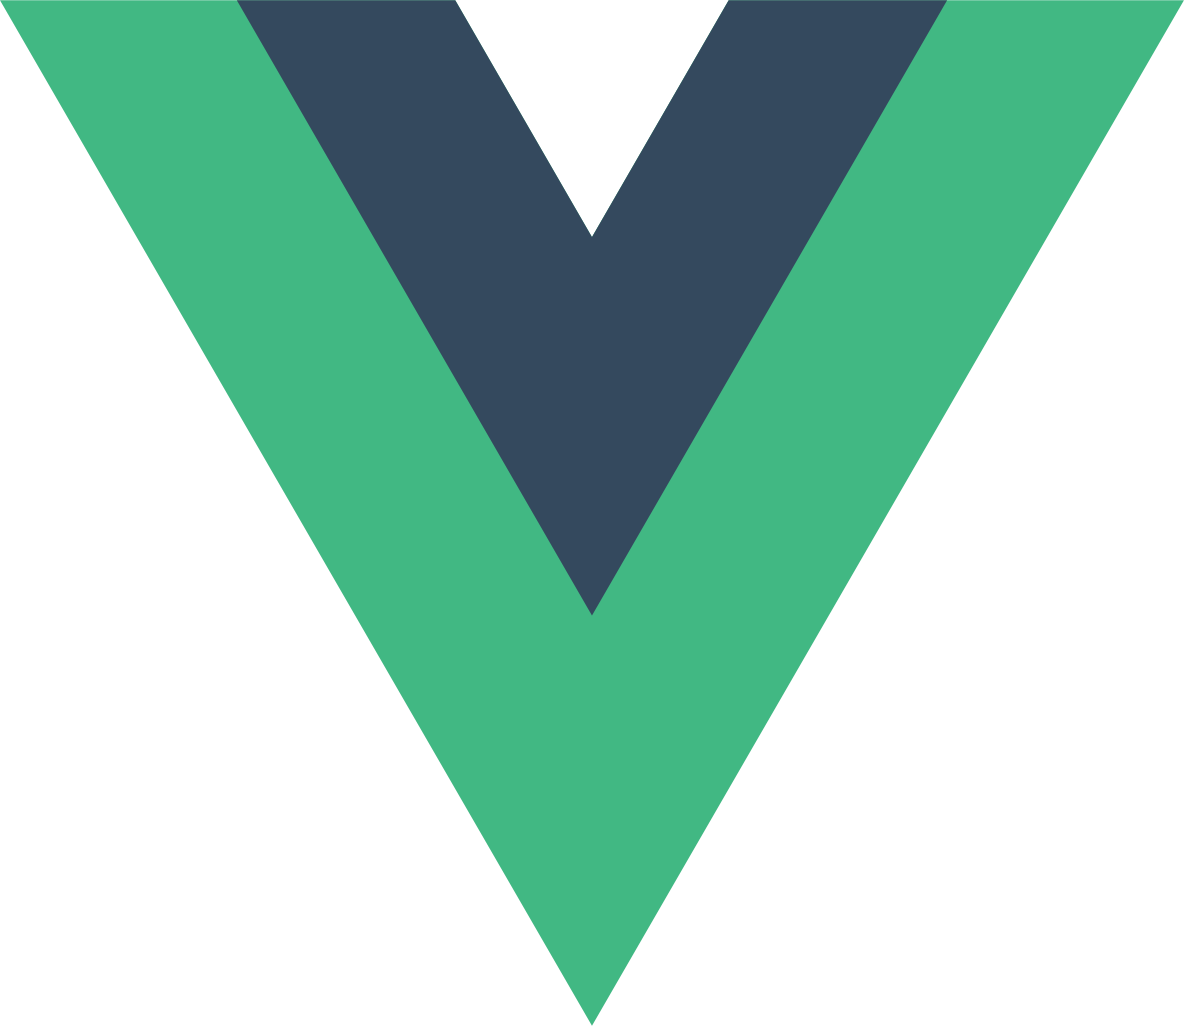 File:Vue.js Logo 2.svg.